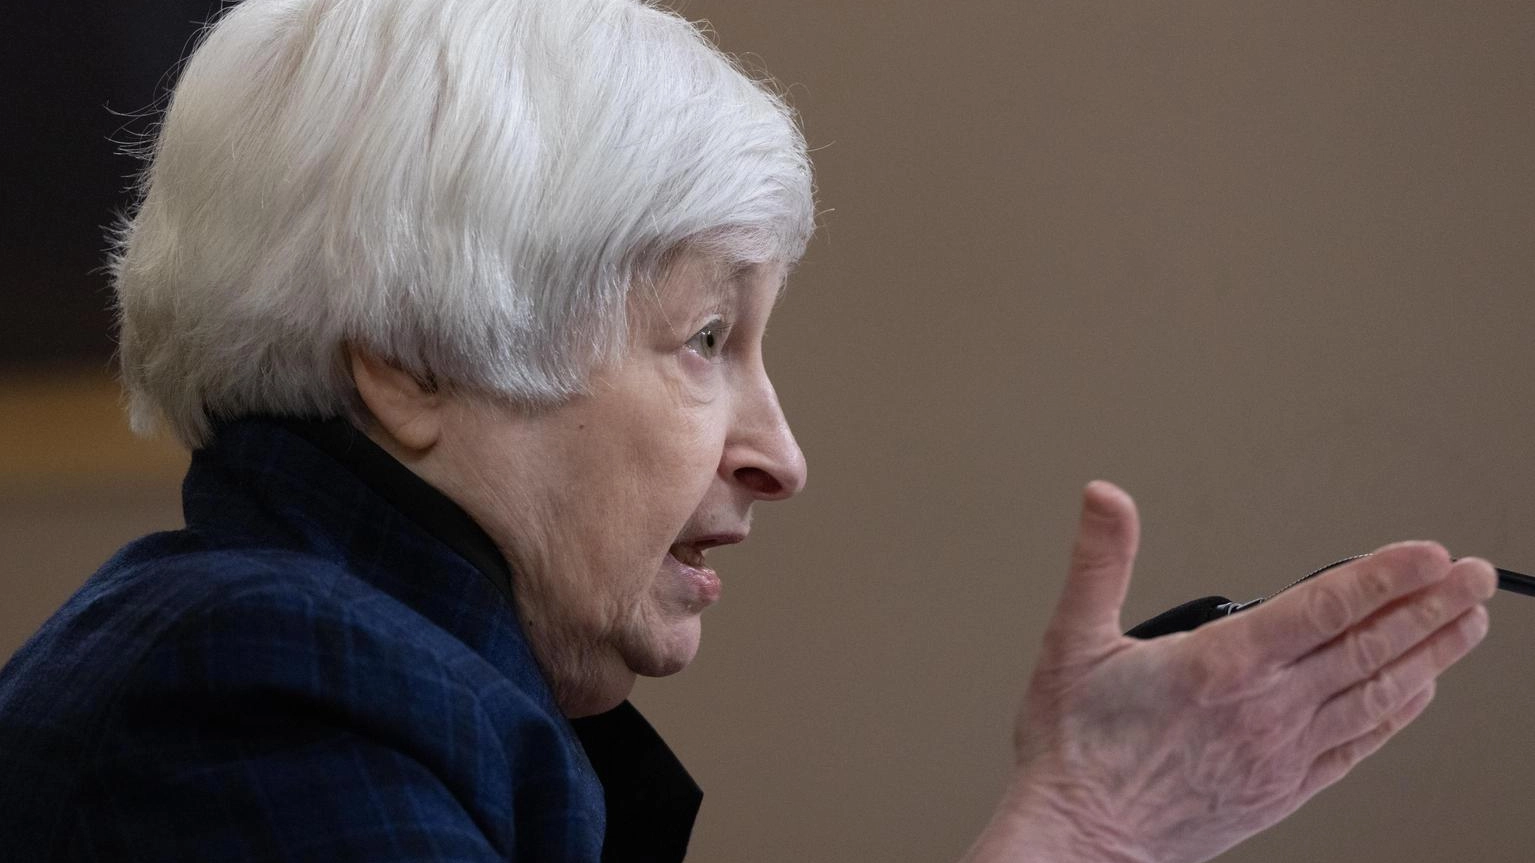 Yellen, sovraccapacità Cina minaccia tutti, fronte sia unito